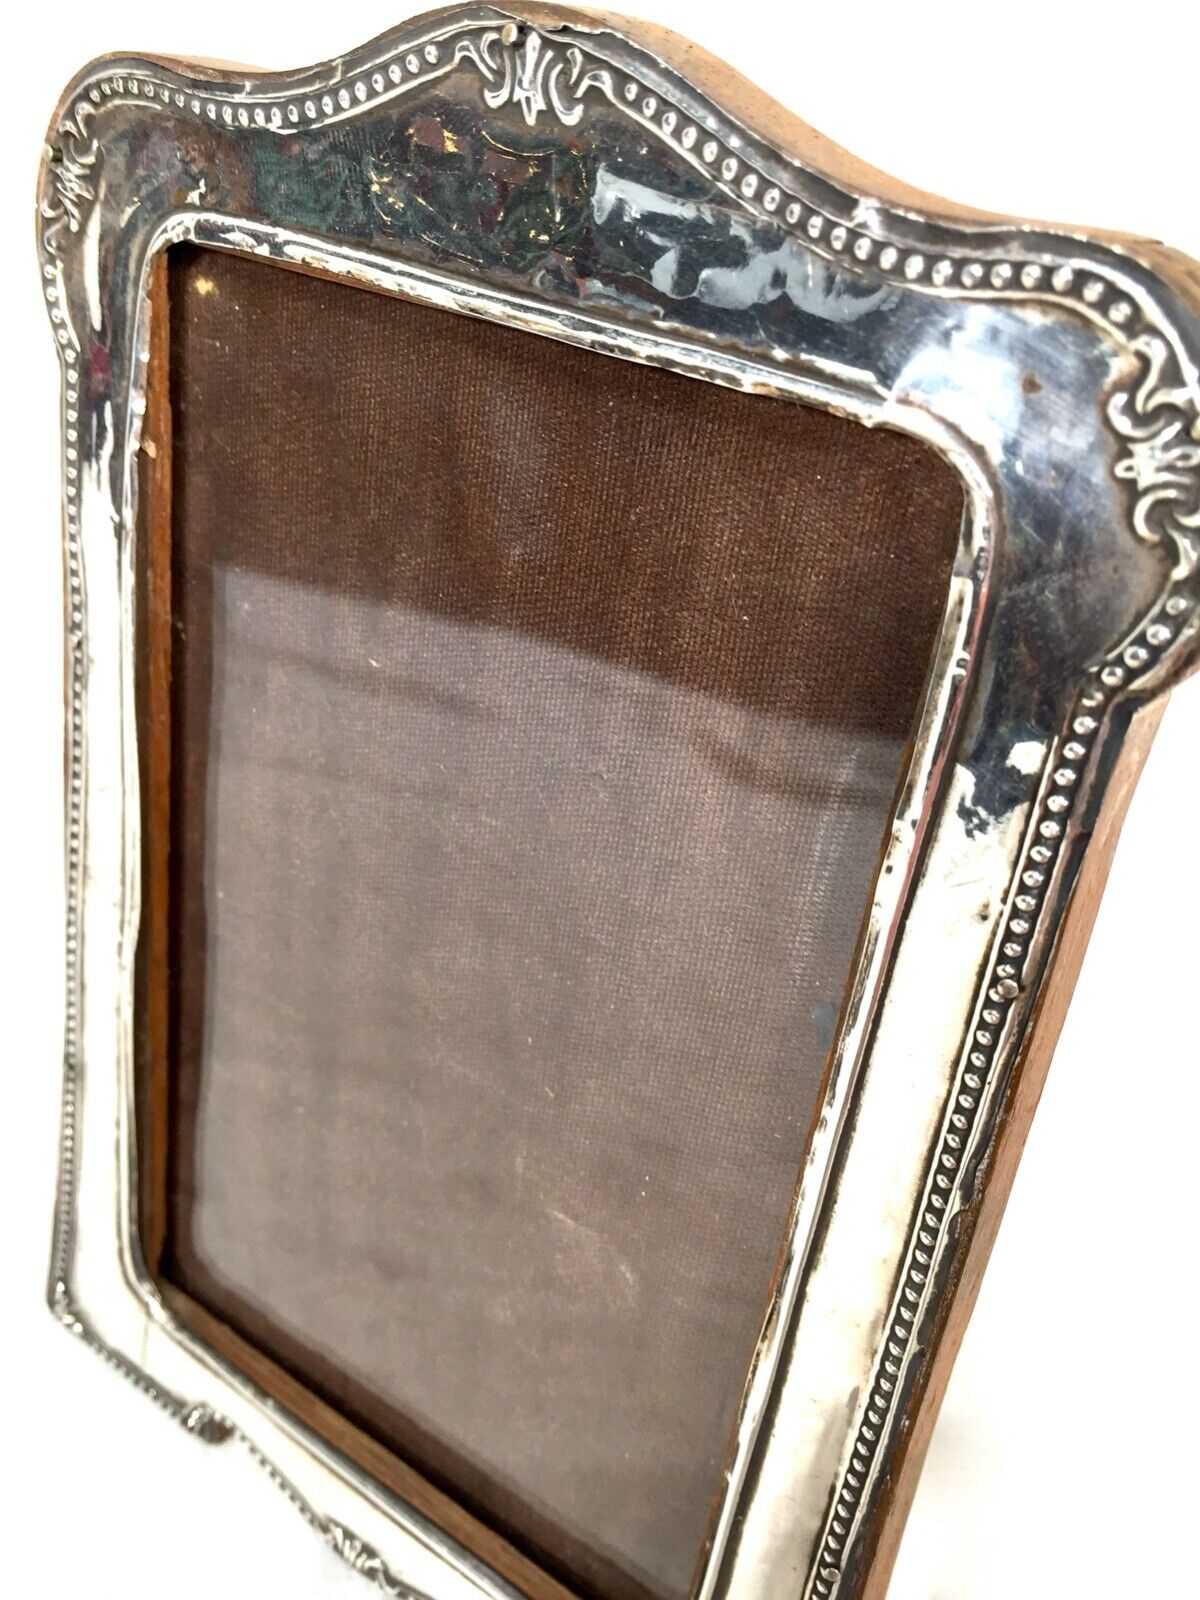 Antique Silver Photo Frame - Hallmarked Birmingham 1913 / Free Standing